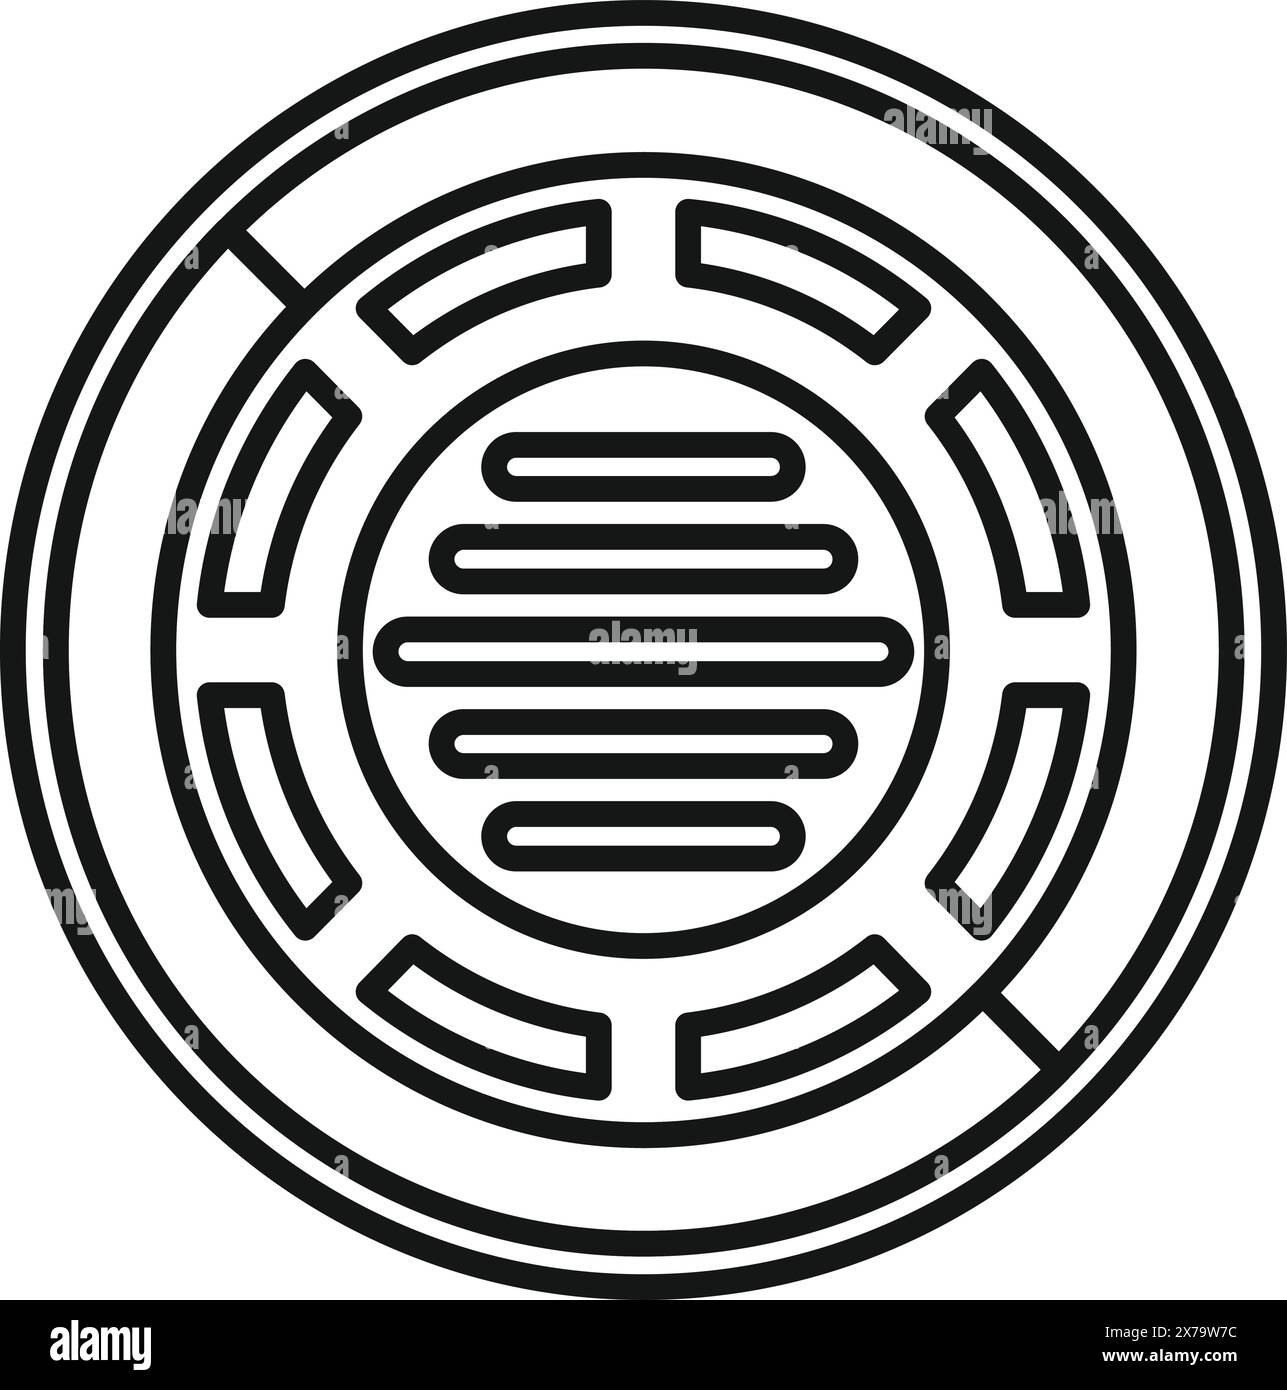 Minimalistische Schwarzweiß-Strichgrafik-Illustration eines kreisförmigen Labyrinths oder Labyrinths Stock Vektor